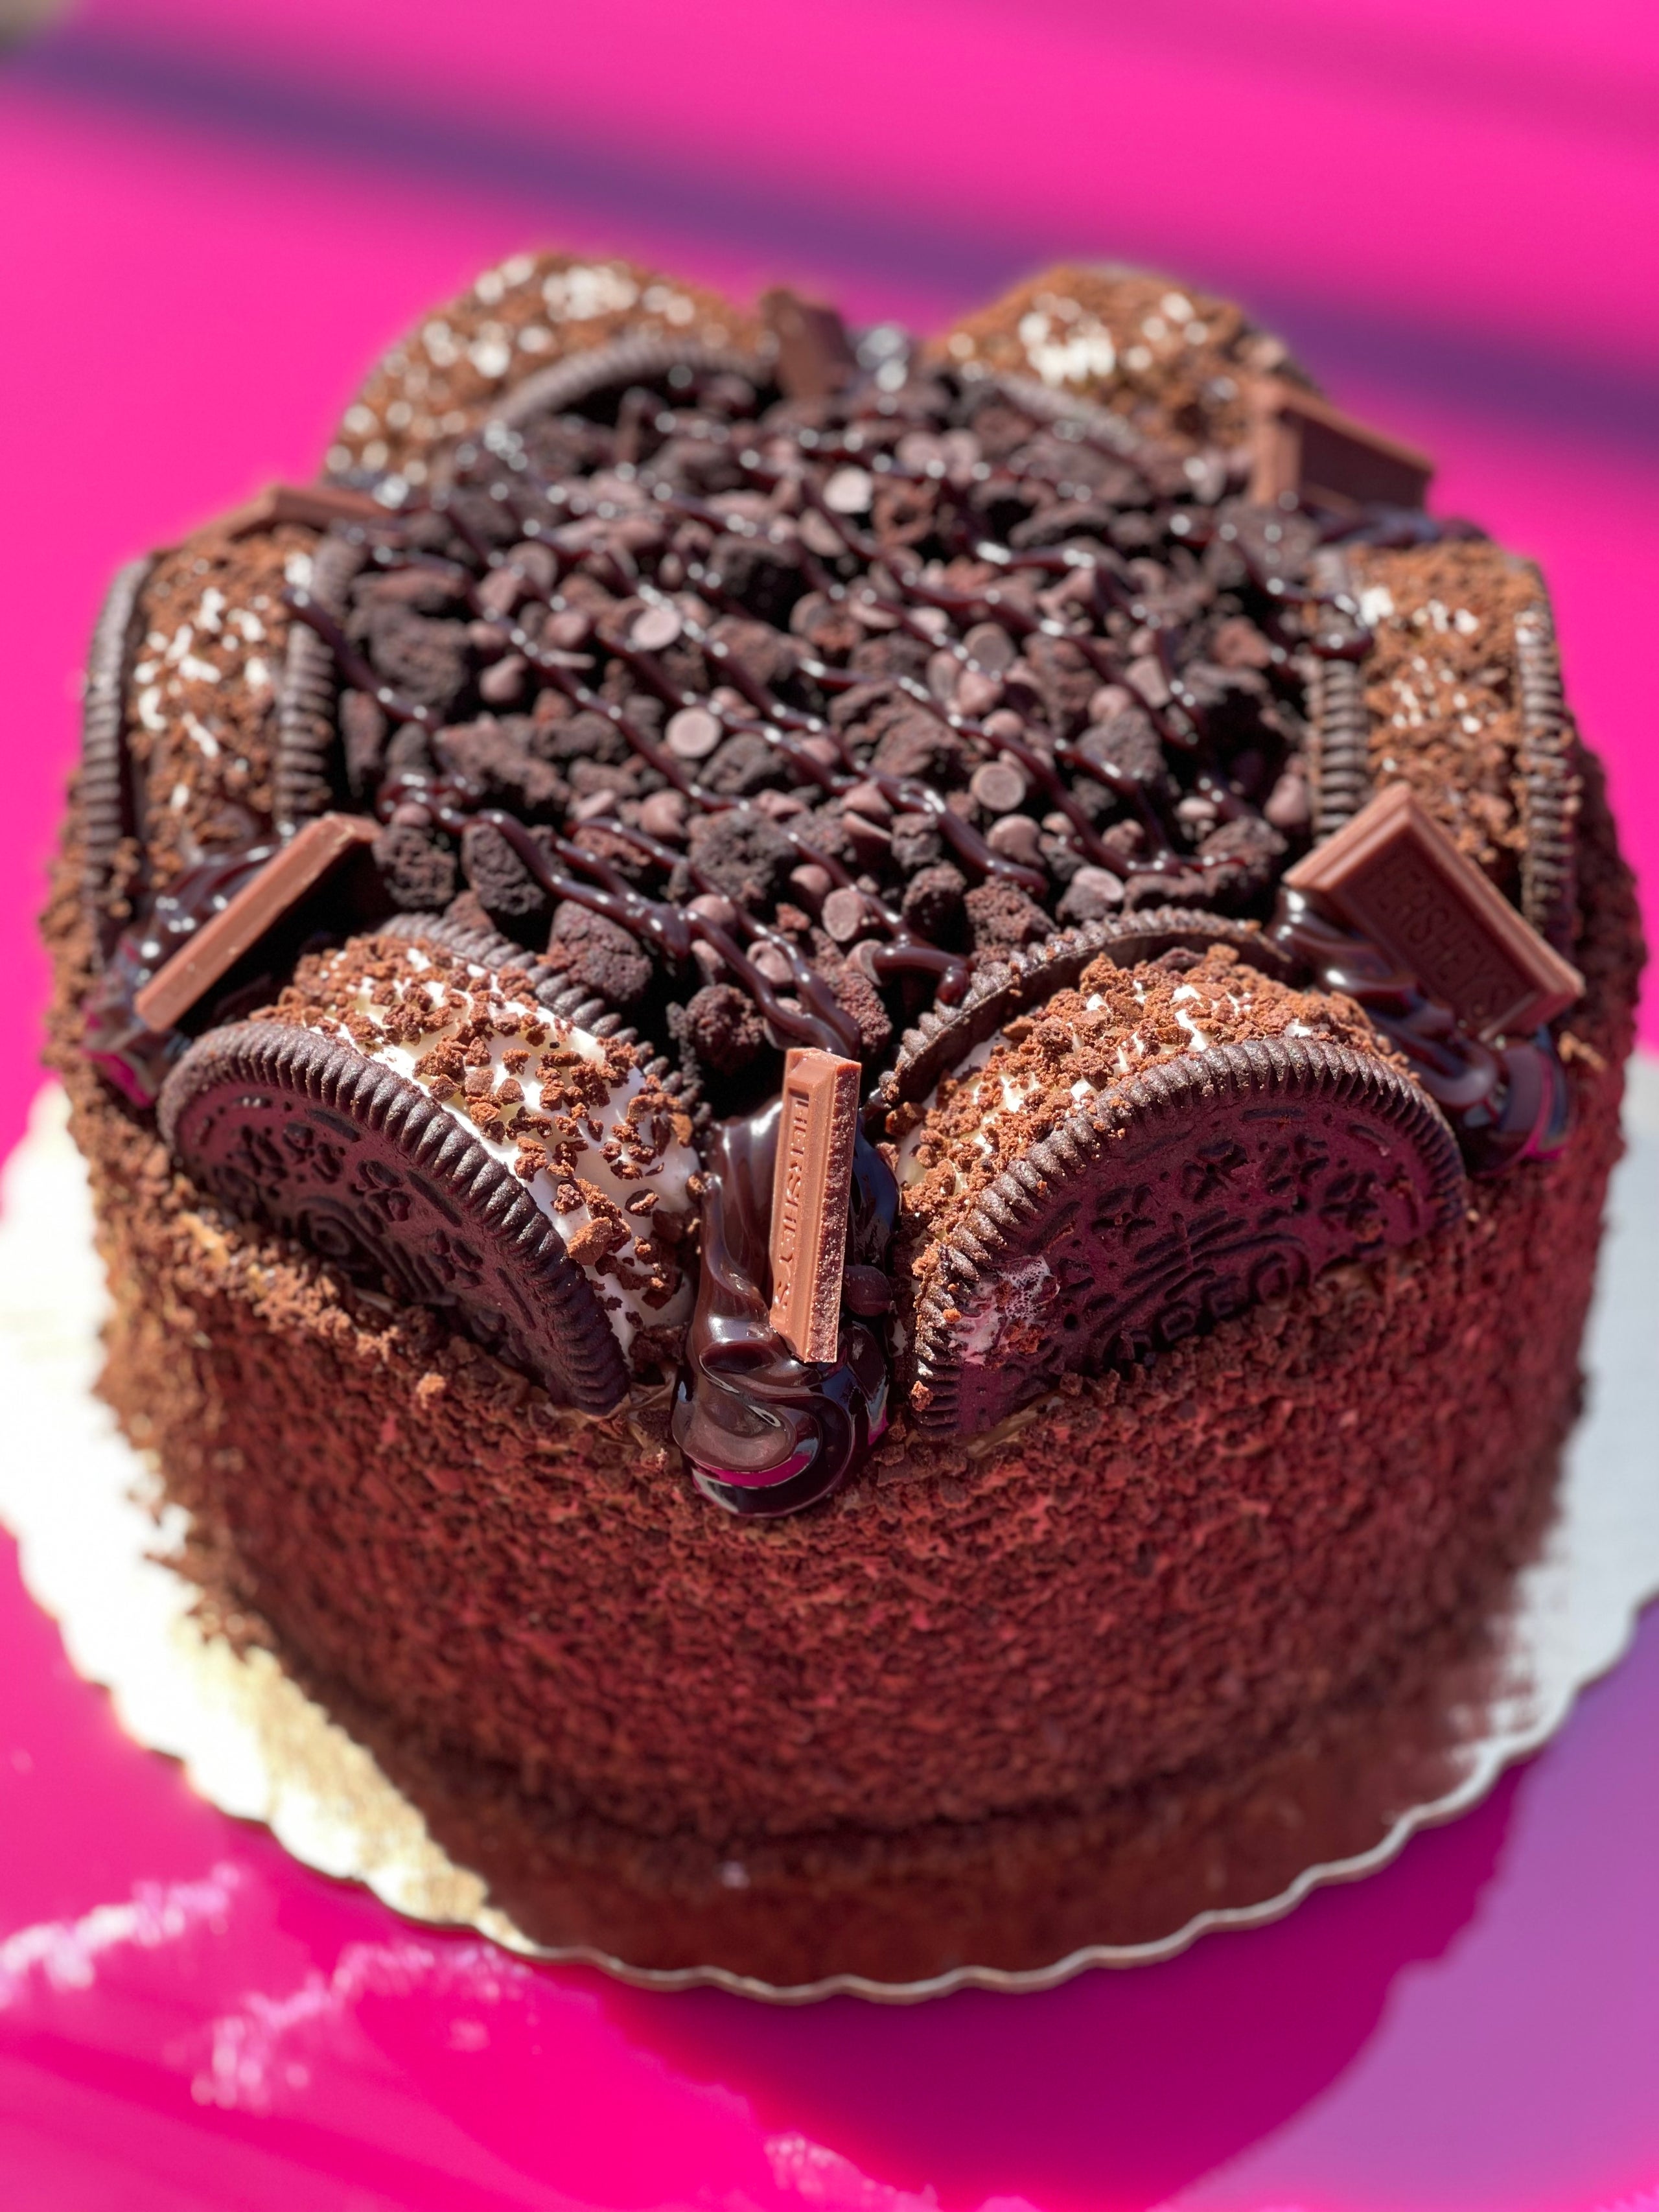 10 Minute ICE CREAM BIRTHDAY CAKE! Soft Chocolate Cake w/ Softy Ice Cream🍦🍰  Ice Cream Cake Recipe 